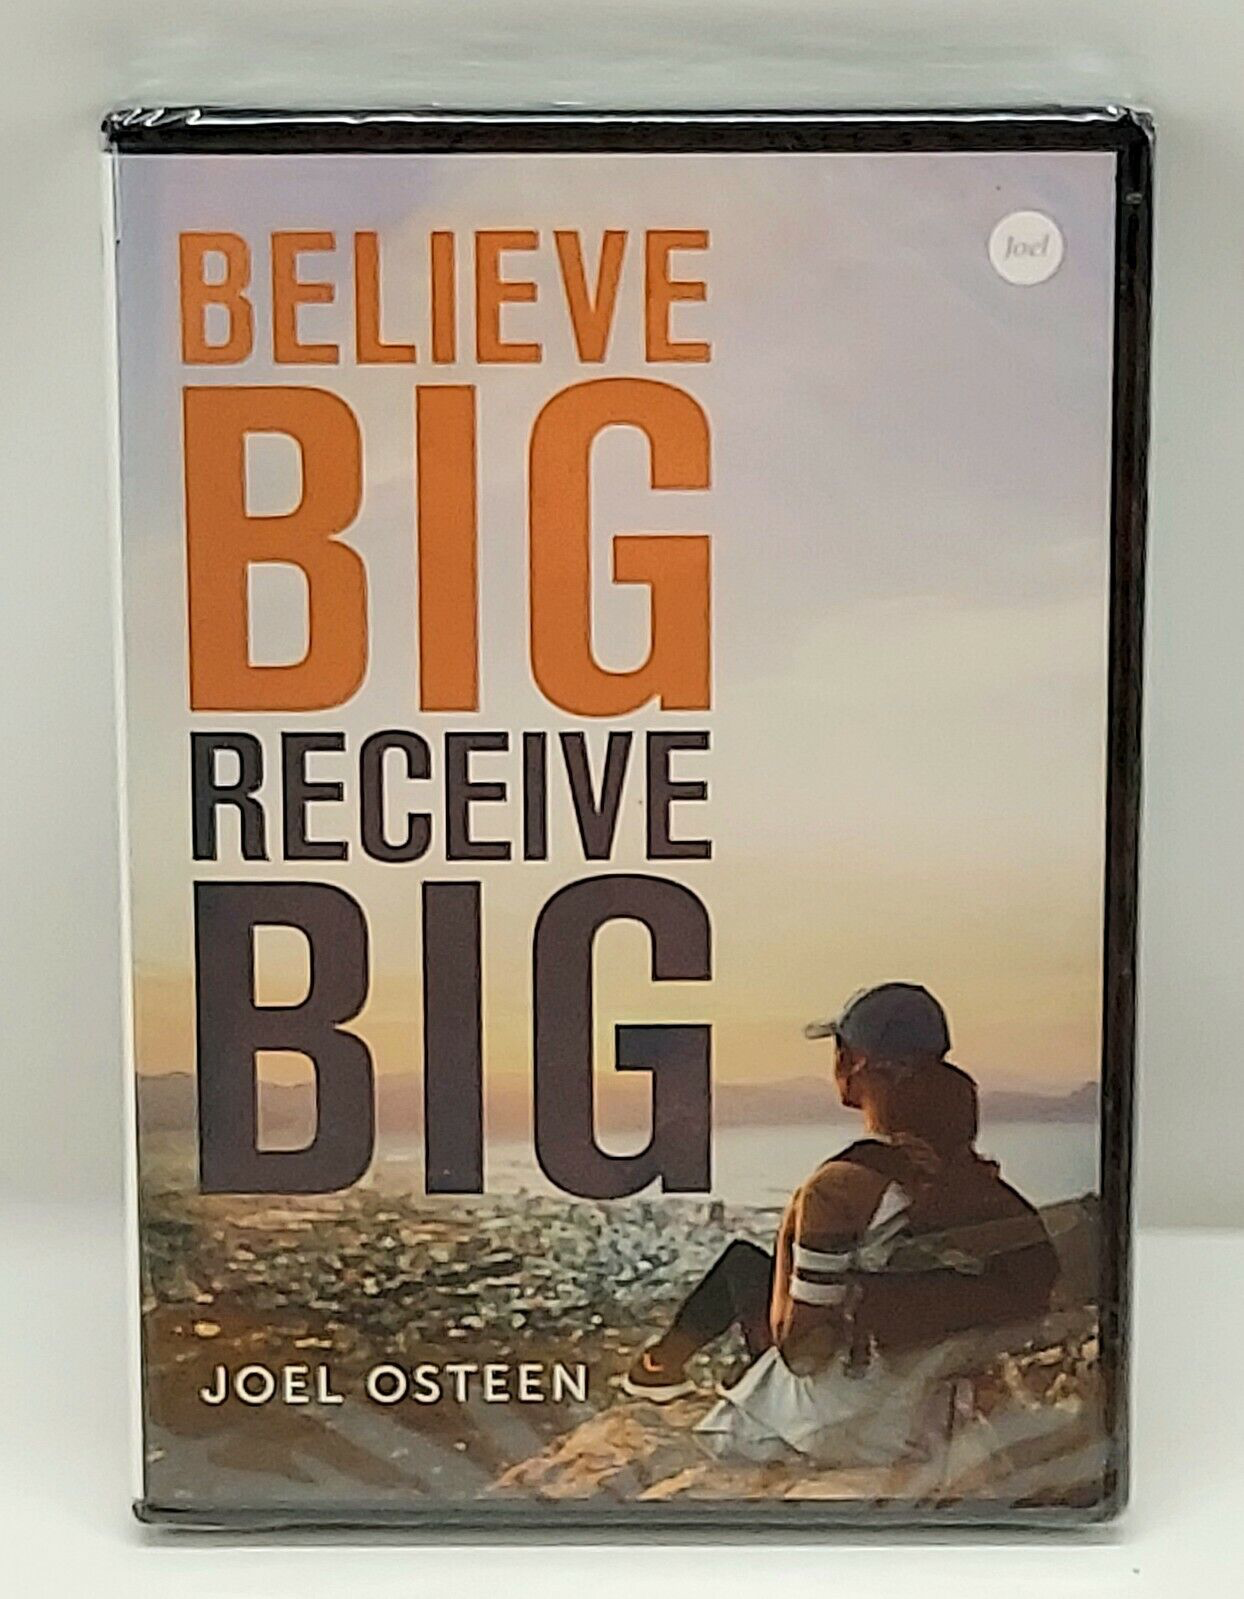 Joel Osteen: Believe Big Receive Big - DVD